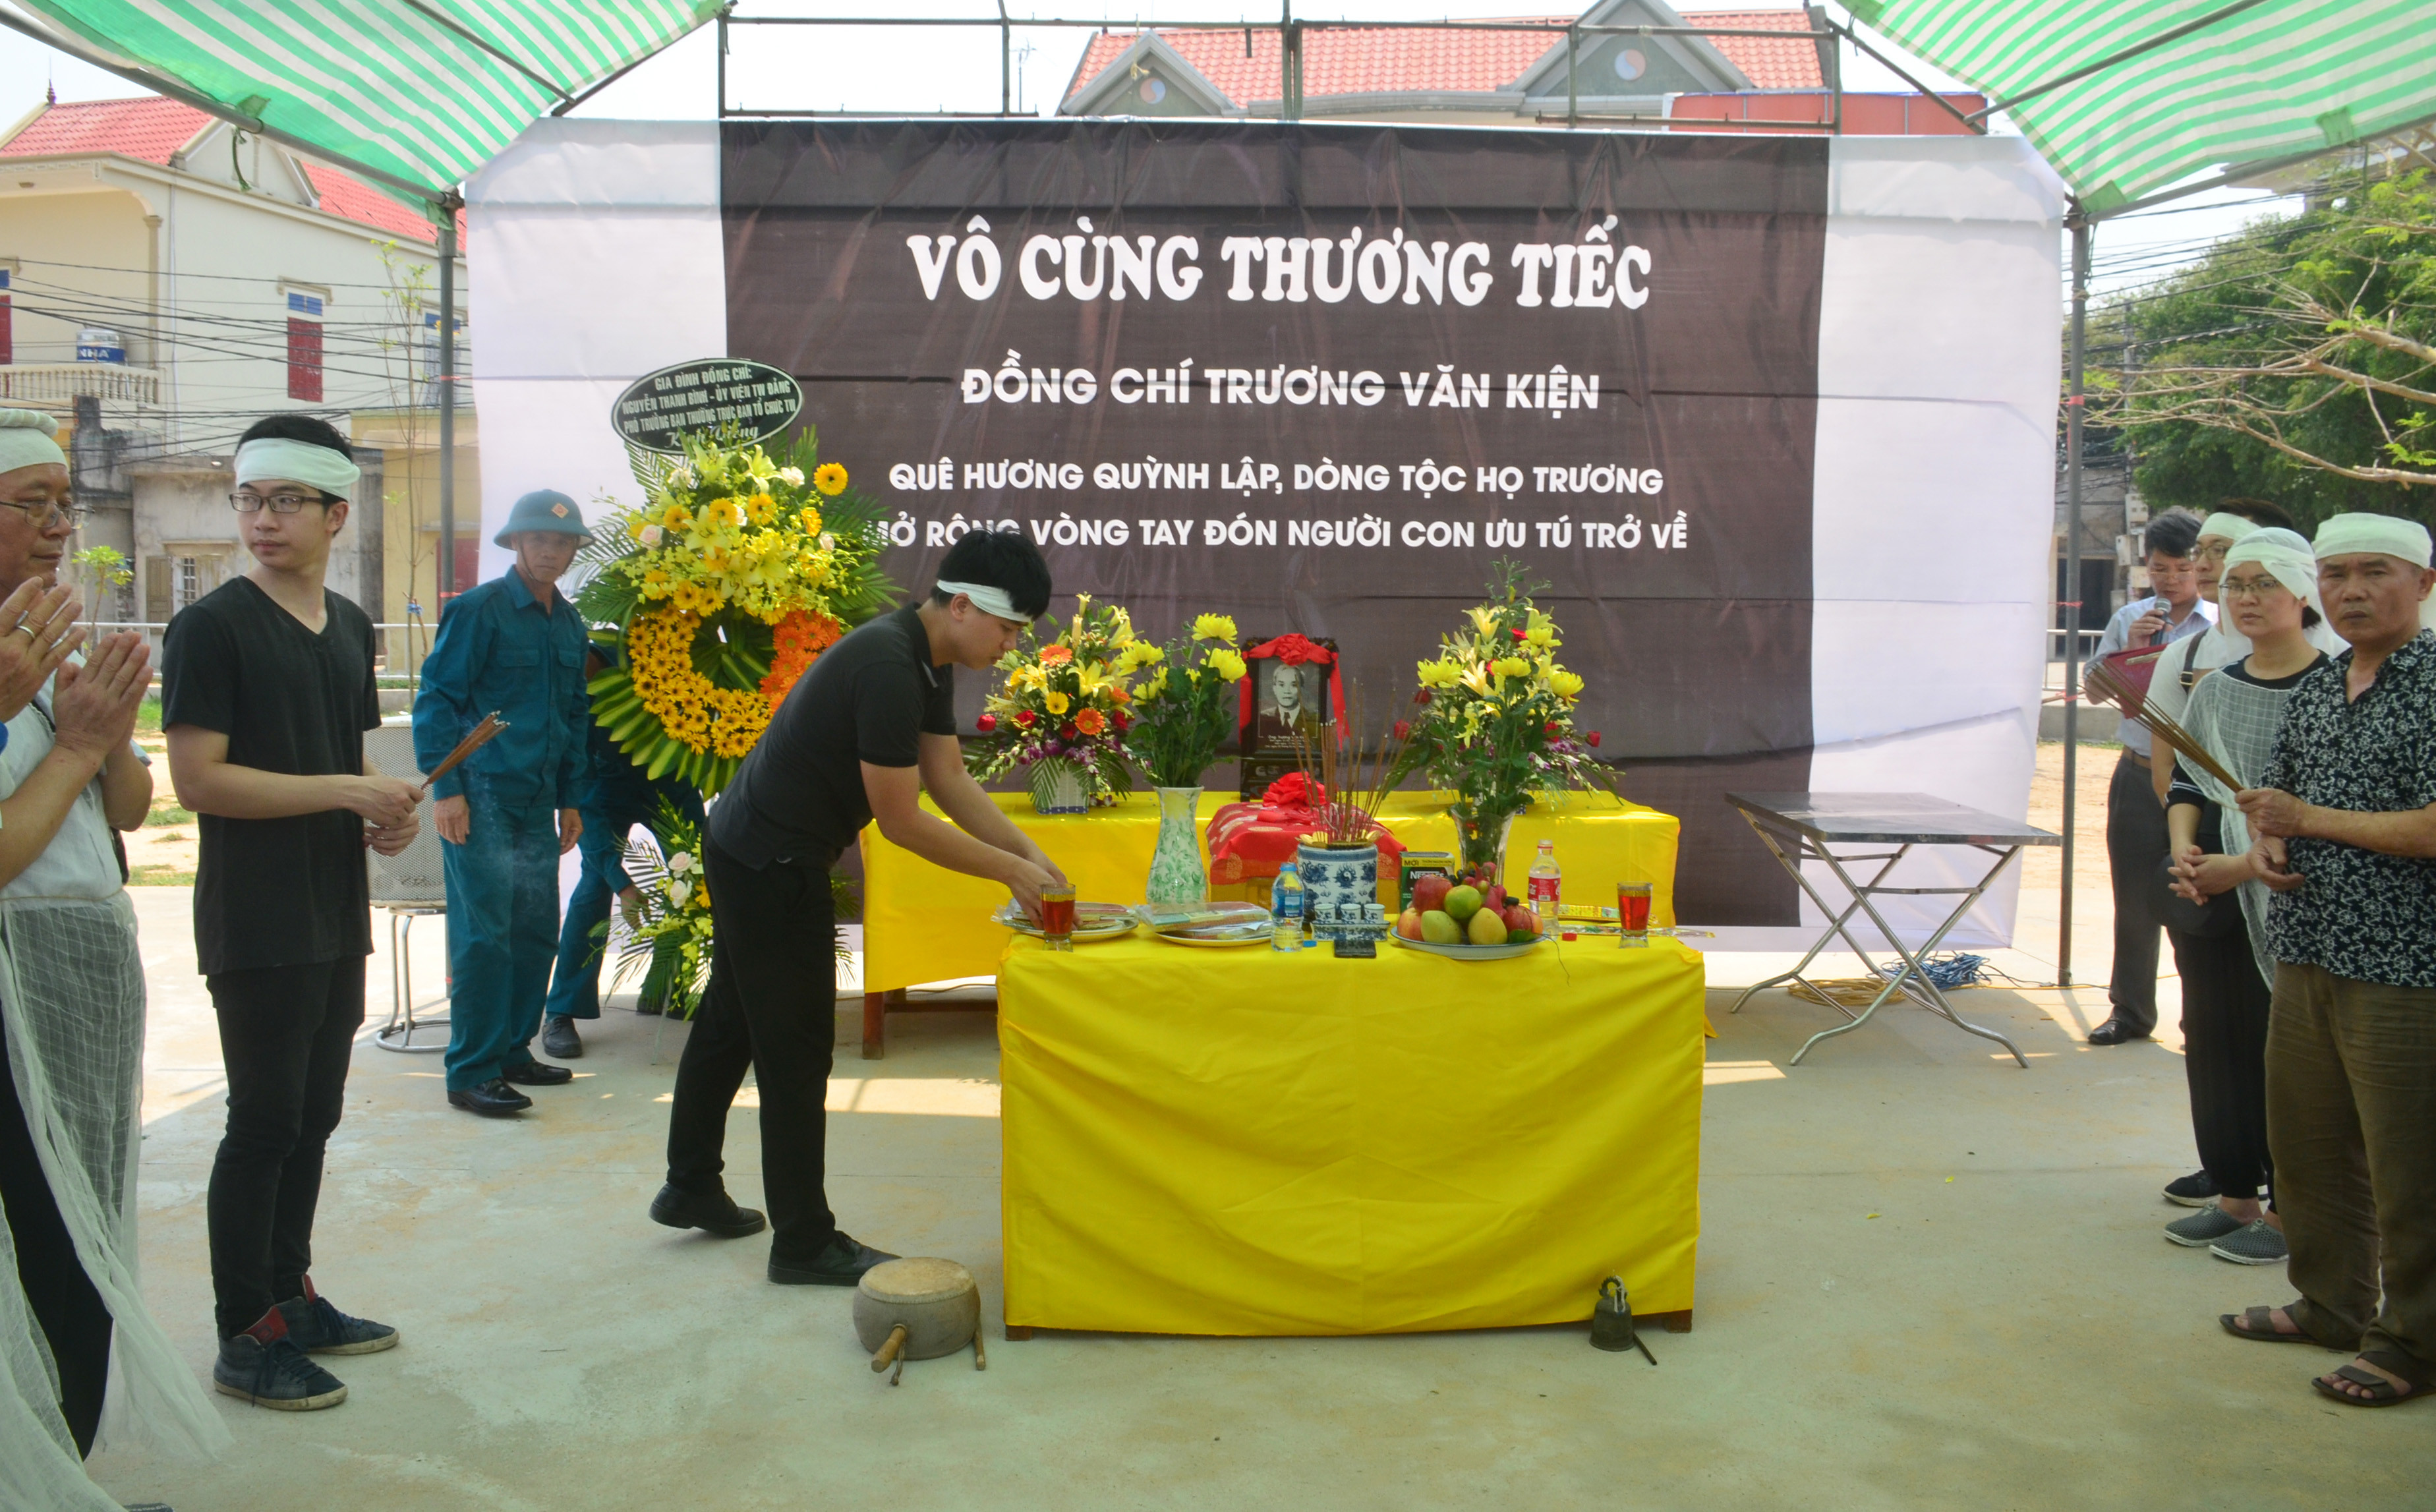 Lễ viếng đồng chí Trương Văn Kiện được tổ chức tại quê nhà - xã Quỳnh Lập, thị xã Hoàng Mai. Ảnh: Thành Duy